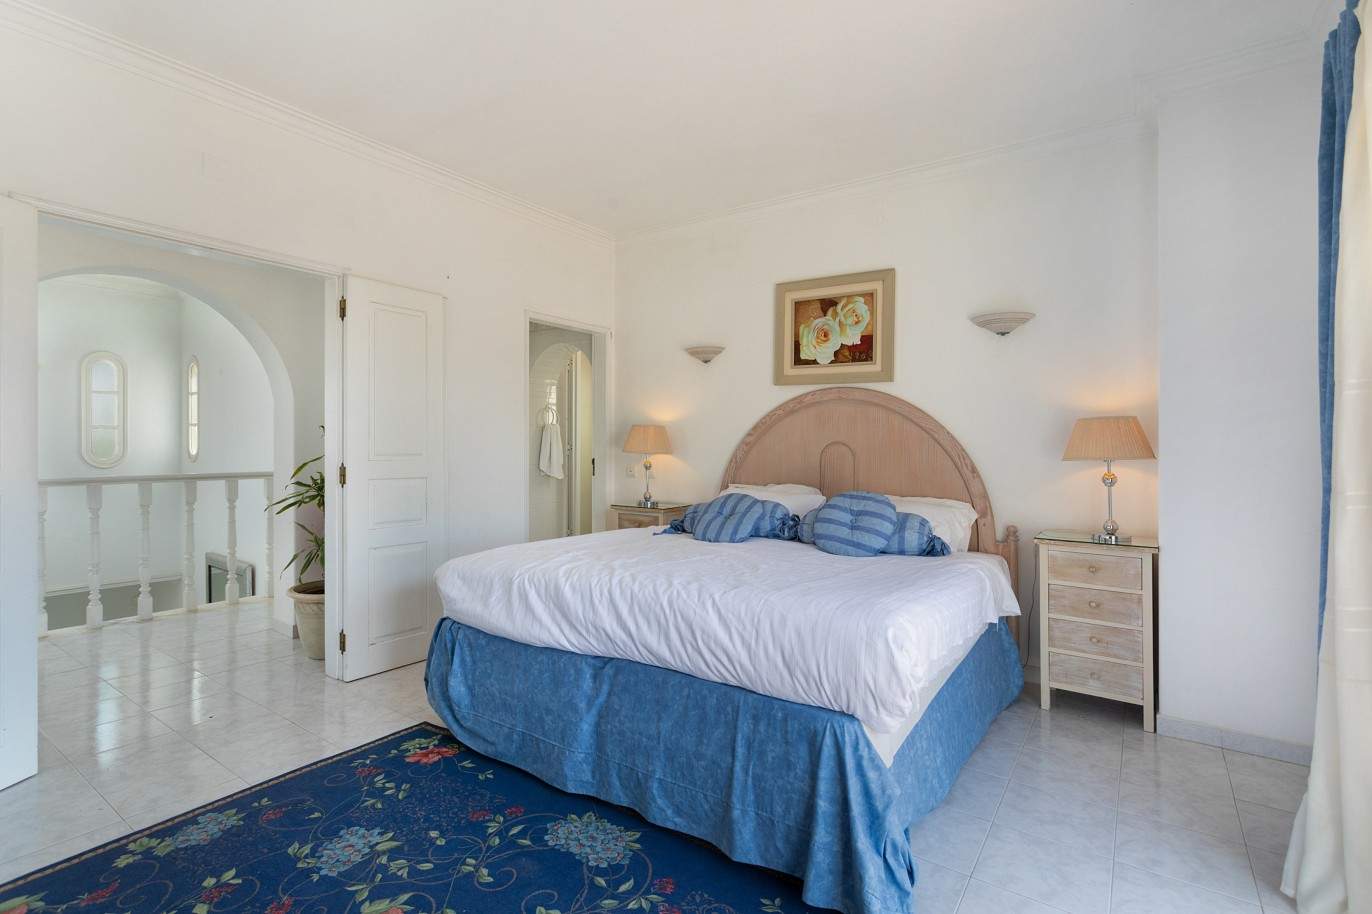 5 Bedroom Villa with swimming pool, for sale in Vilamoura, Algarve_212549